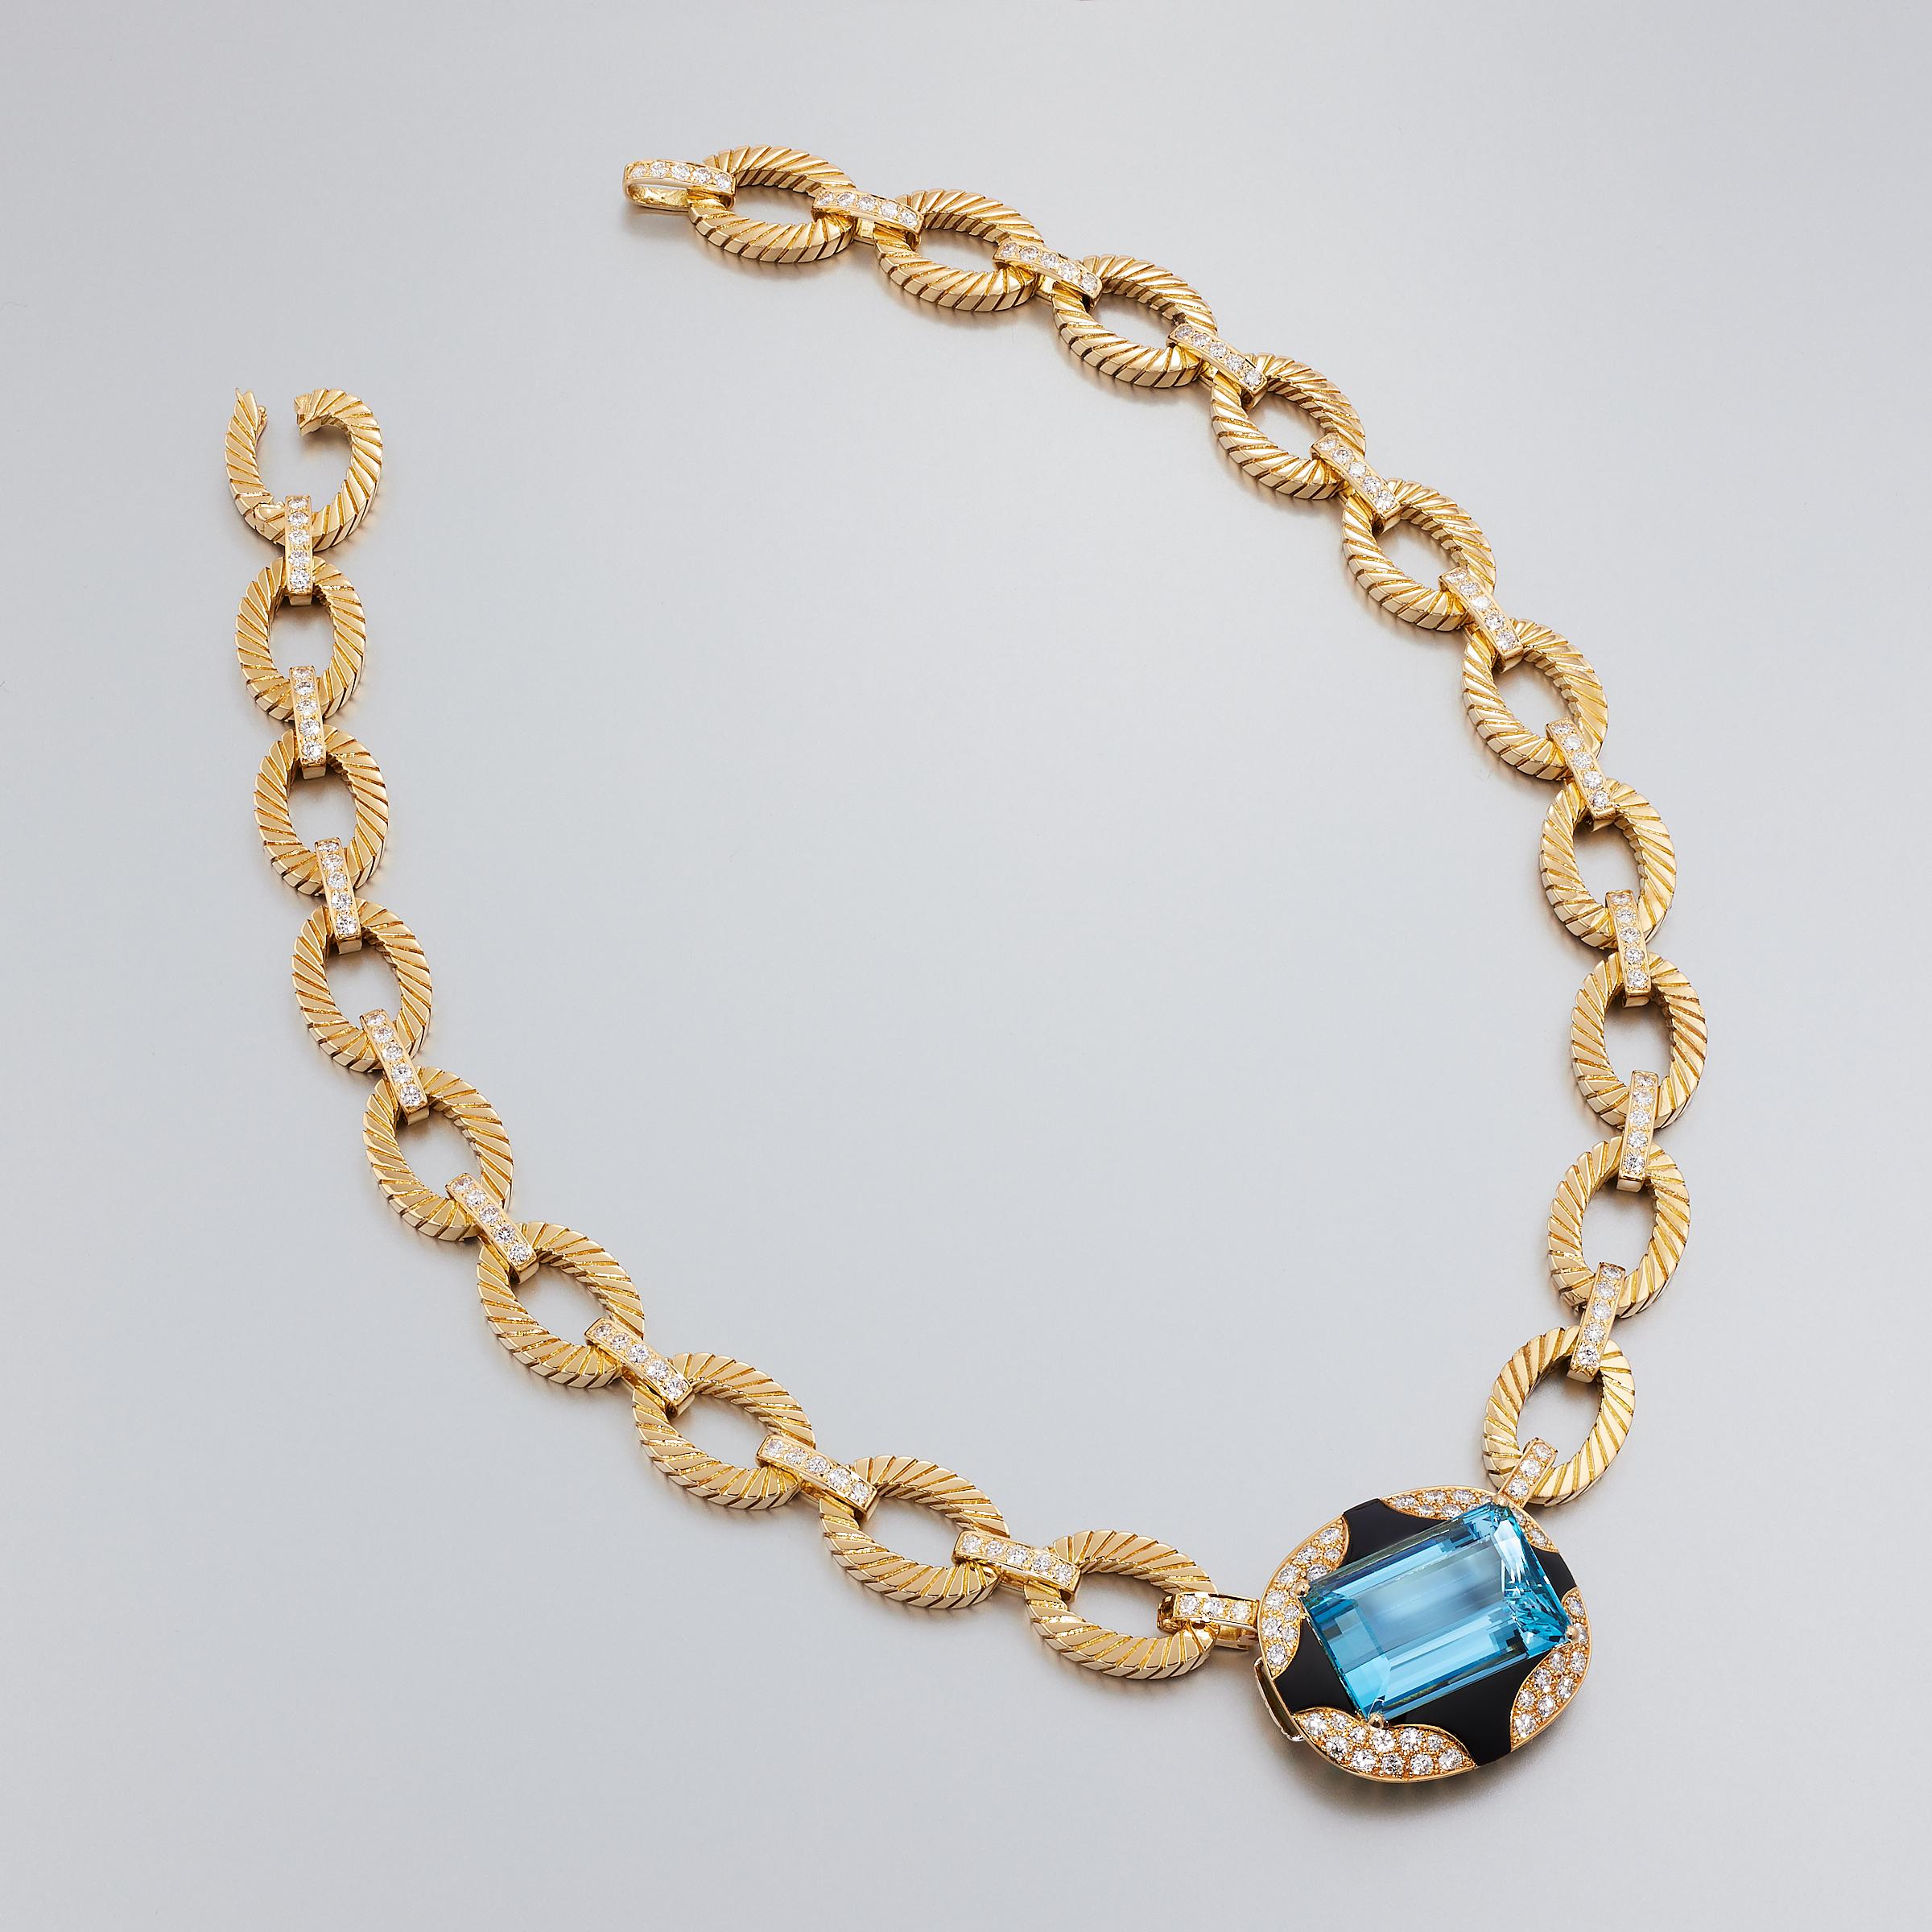 Exceptionnelle suite unique d'aigue-marine, diamant et onyx noir attribuée à Mauboussin Paris et sertie en or jaune 18 carats. Cette impressionnante suite se compose d'un collier, d'un bracelet et de boucles d'oreilles et est une création vintage